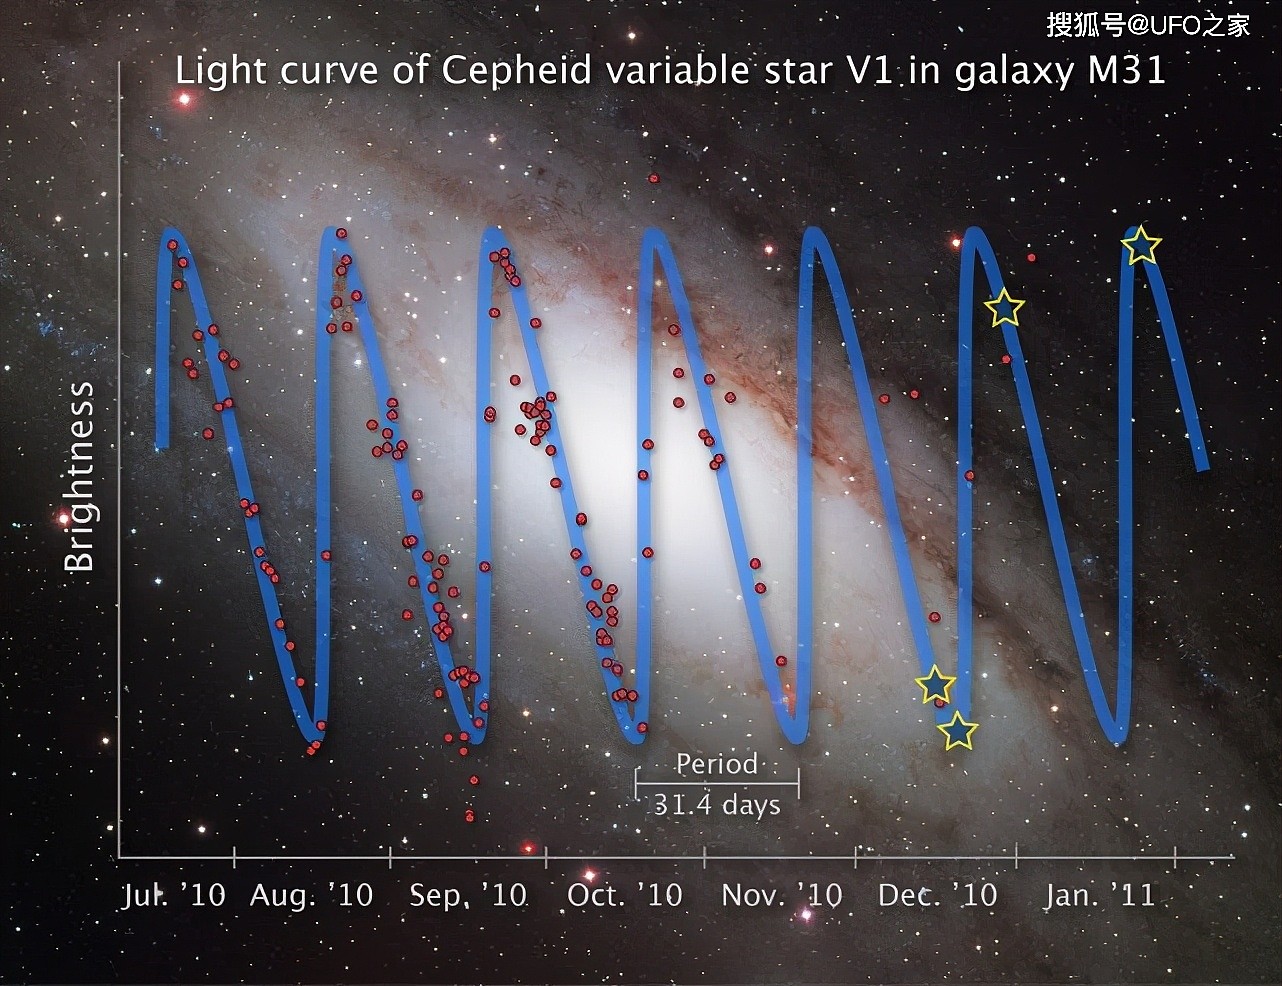 108亿光年处，科学家发现“宇宙战争”遗迹，创痕直径达1.7万光年 - 3